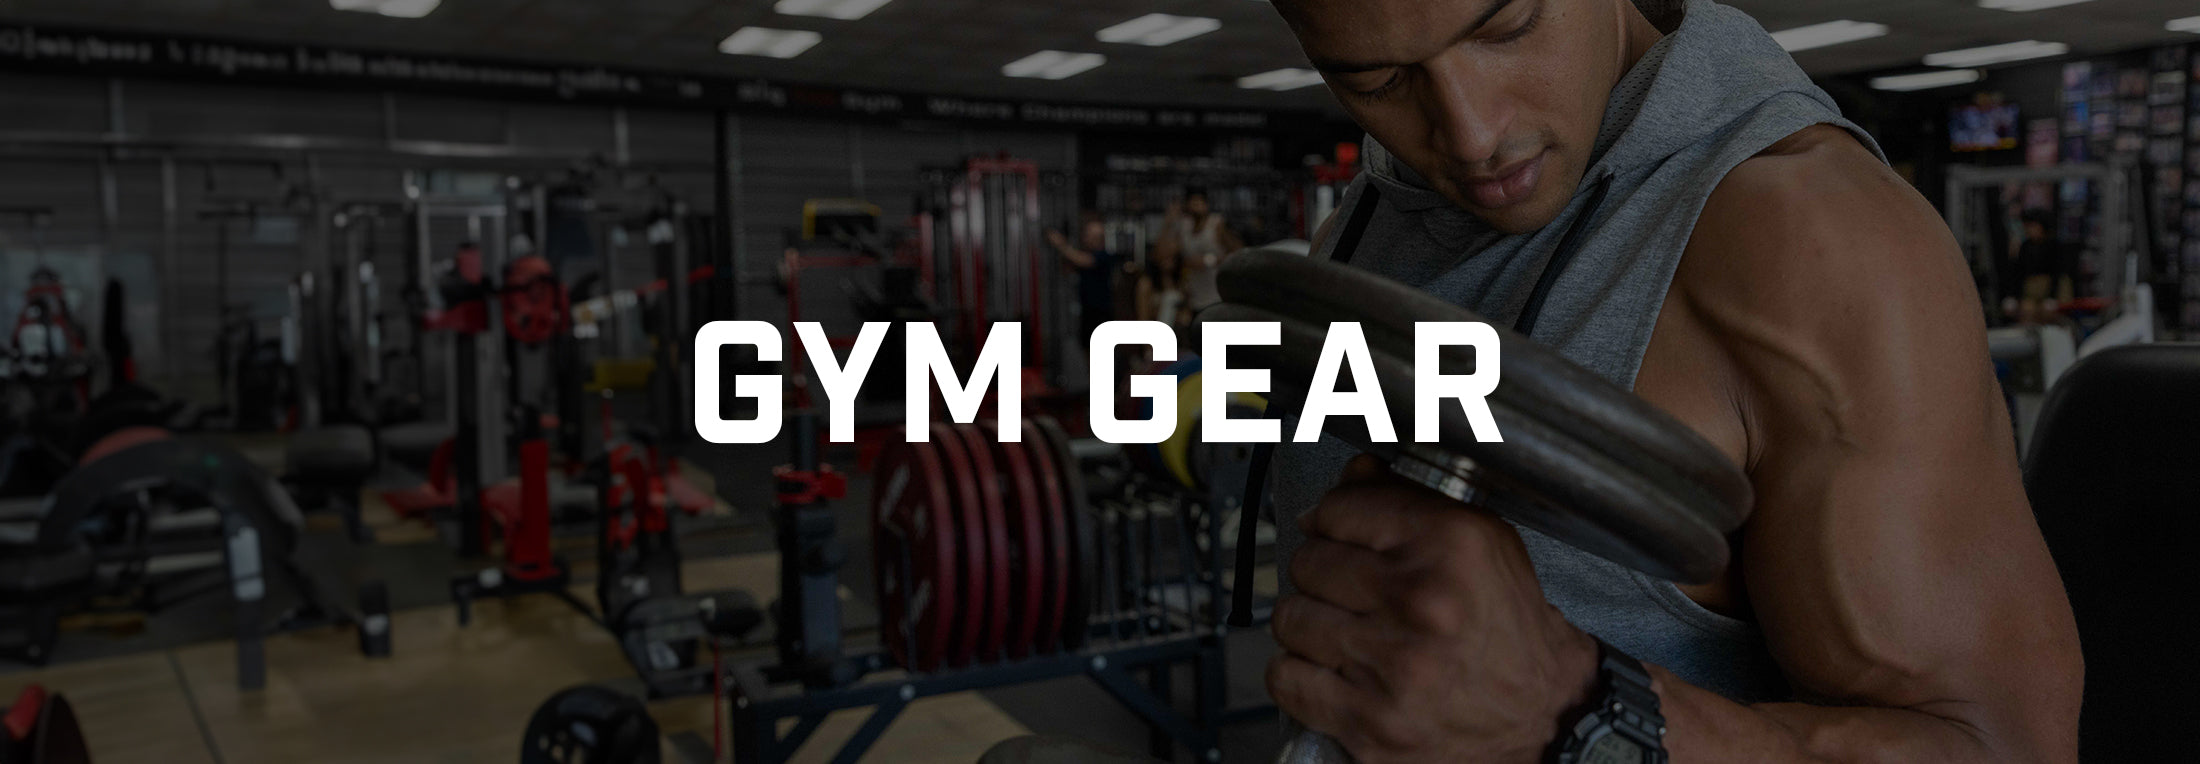 Gym Gear –ZERO FOXTROT